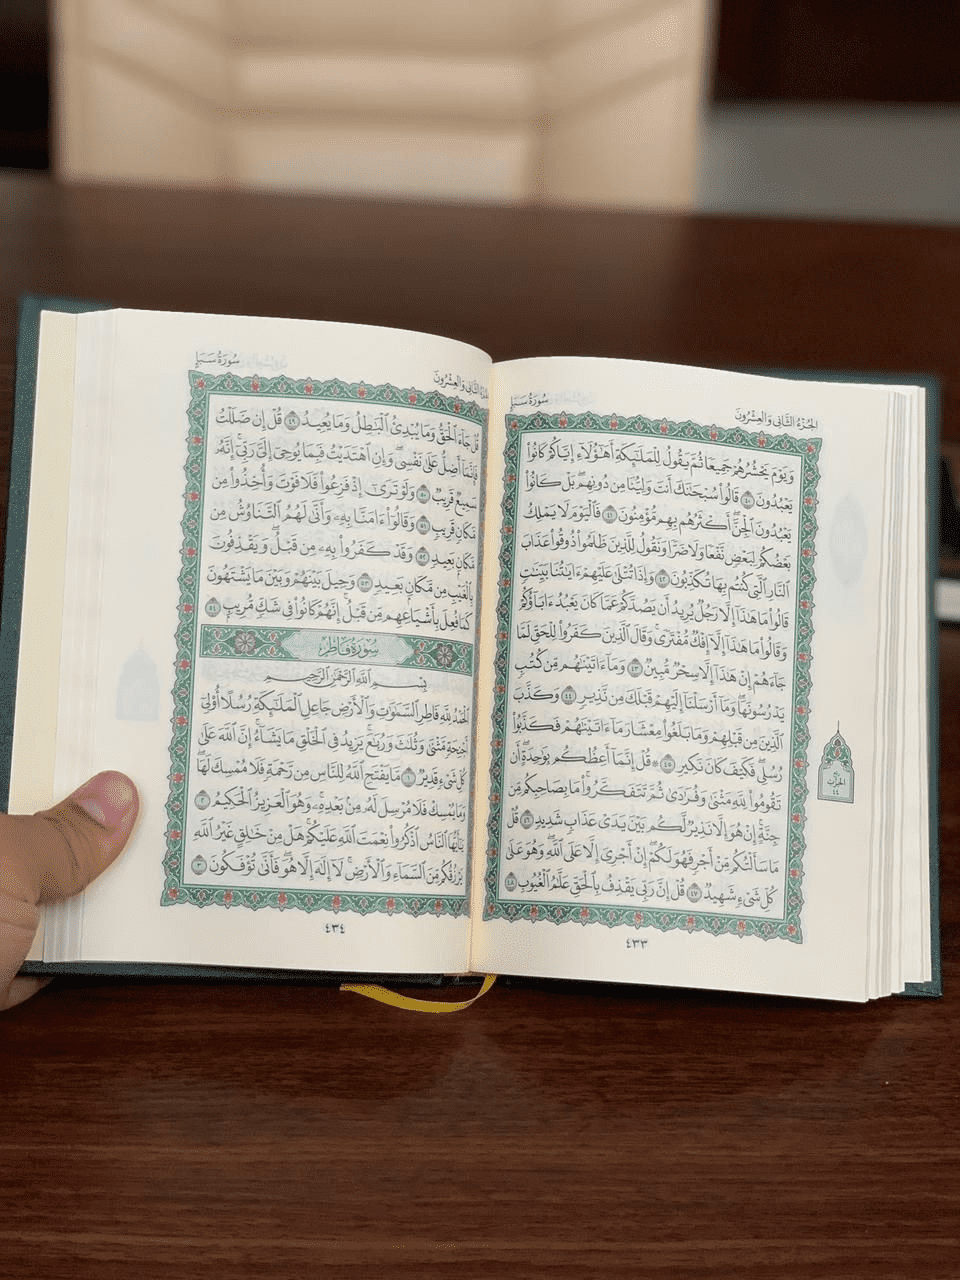 jual jual Mushaf al Quran Cetakan Madinah ukuran 14 x 20